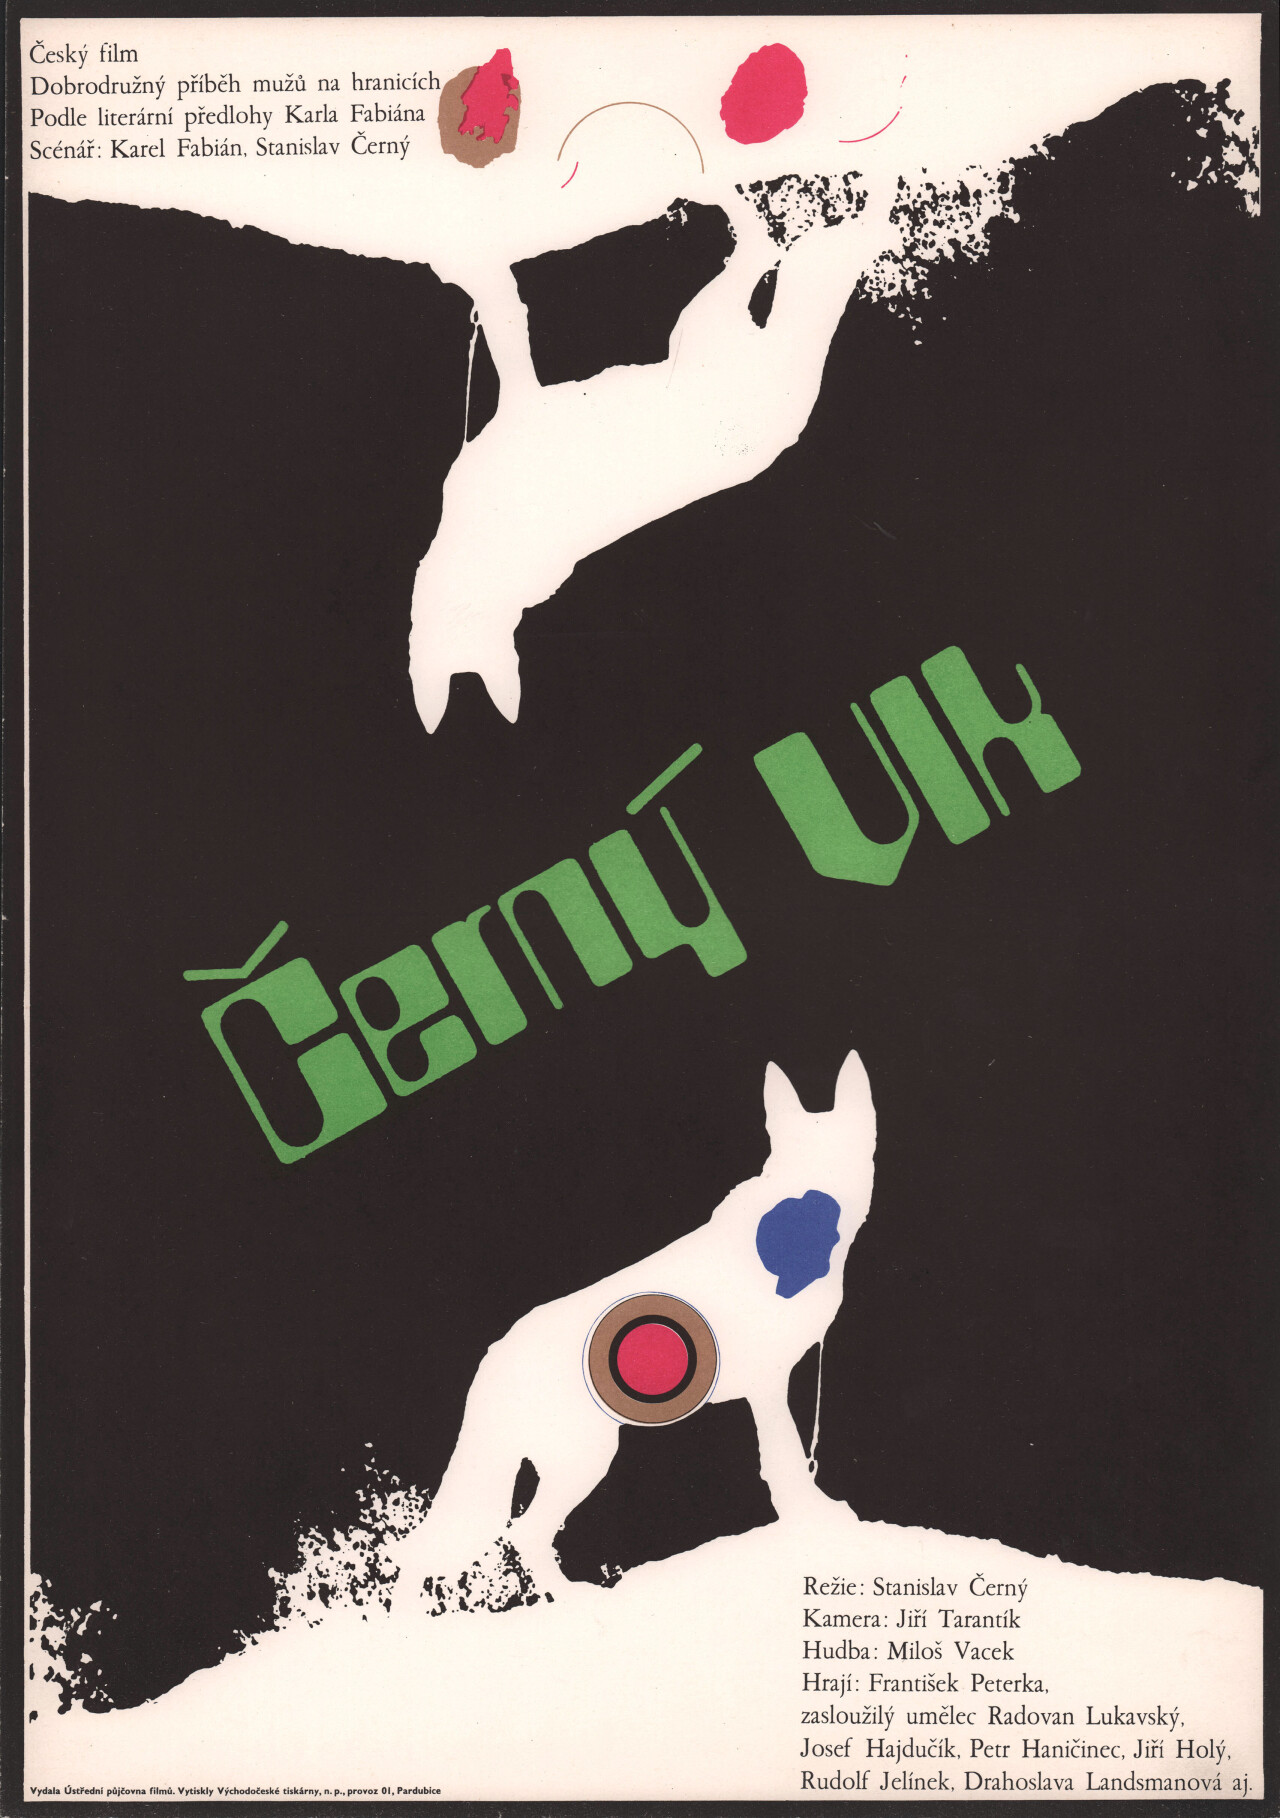 Черный волк (Black Wolf, 1972), режиссёр Станислав Черный, чехословацкий постер к фильму (графический дизайн, 1972 год)